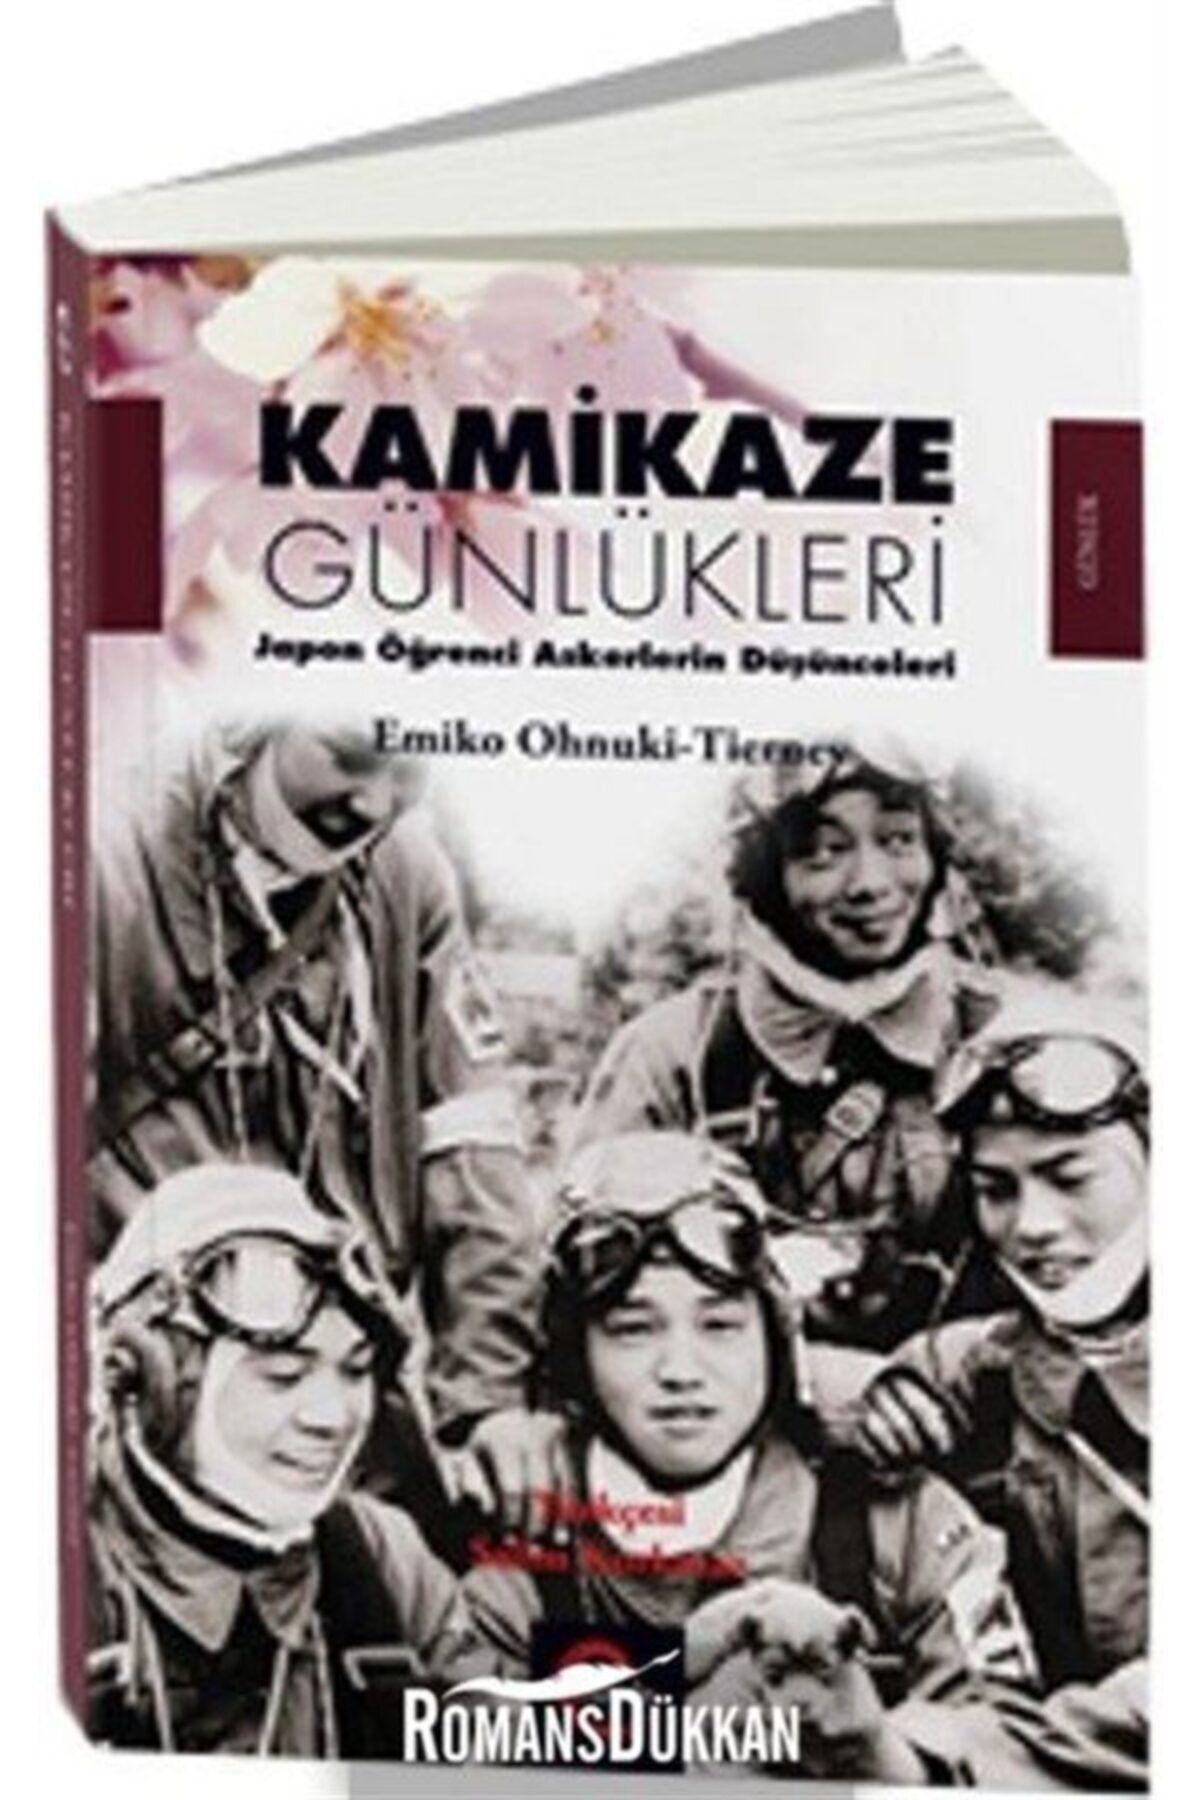 Cümle Yayınları Kamikaze Günlükleri Japon Öğrenci Askerlerin Düşünceleri